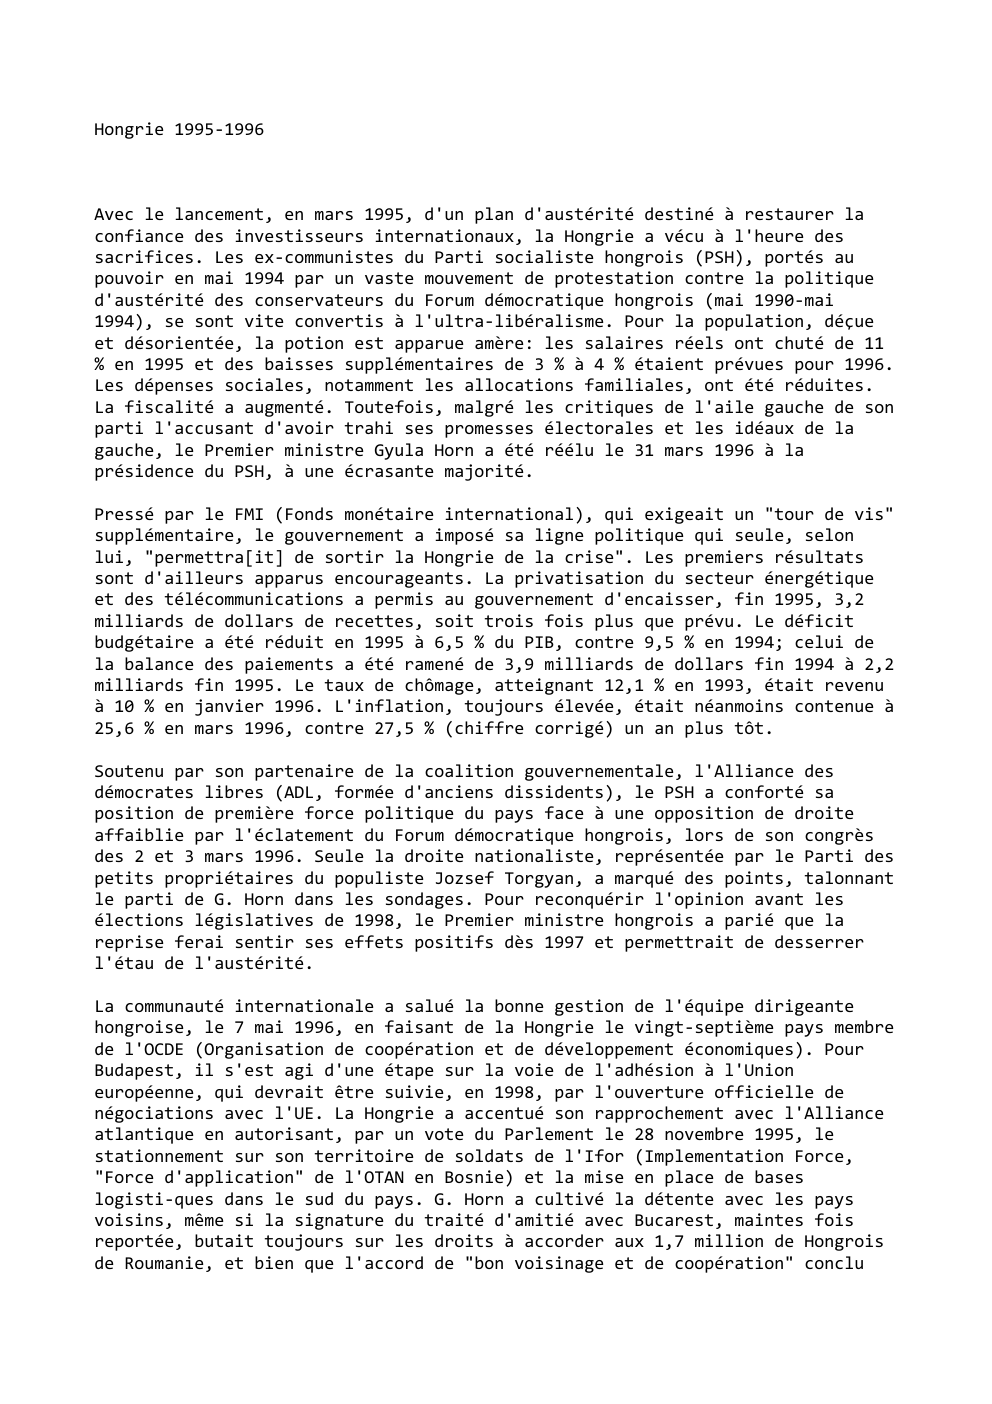 Prévisualisation du document Hongrie 1995-1996

Avec le lancement, en mars 1995, d'un plan d'austérité destiné à restaurer la
confiance des investisseurs internationaux, la...